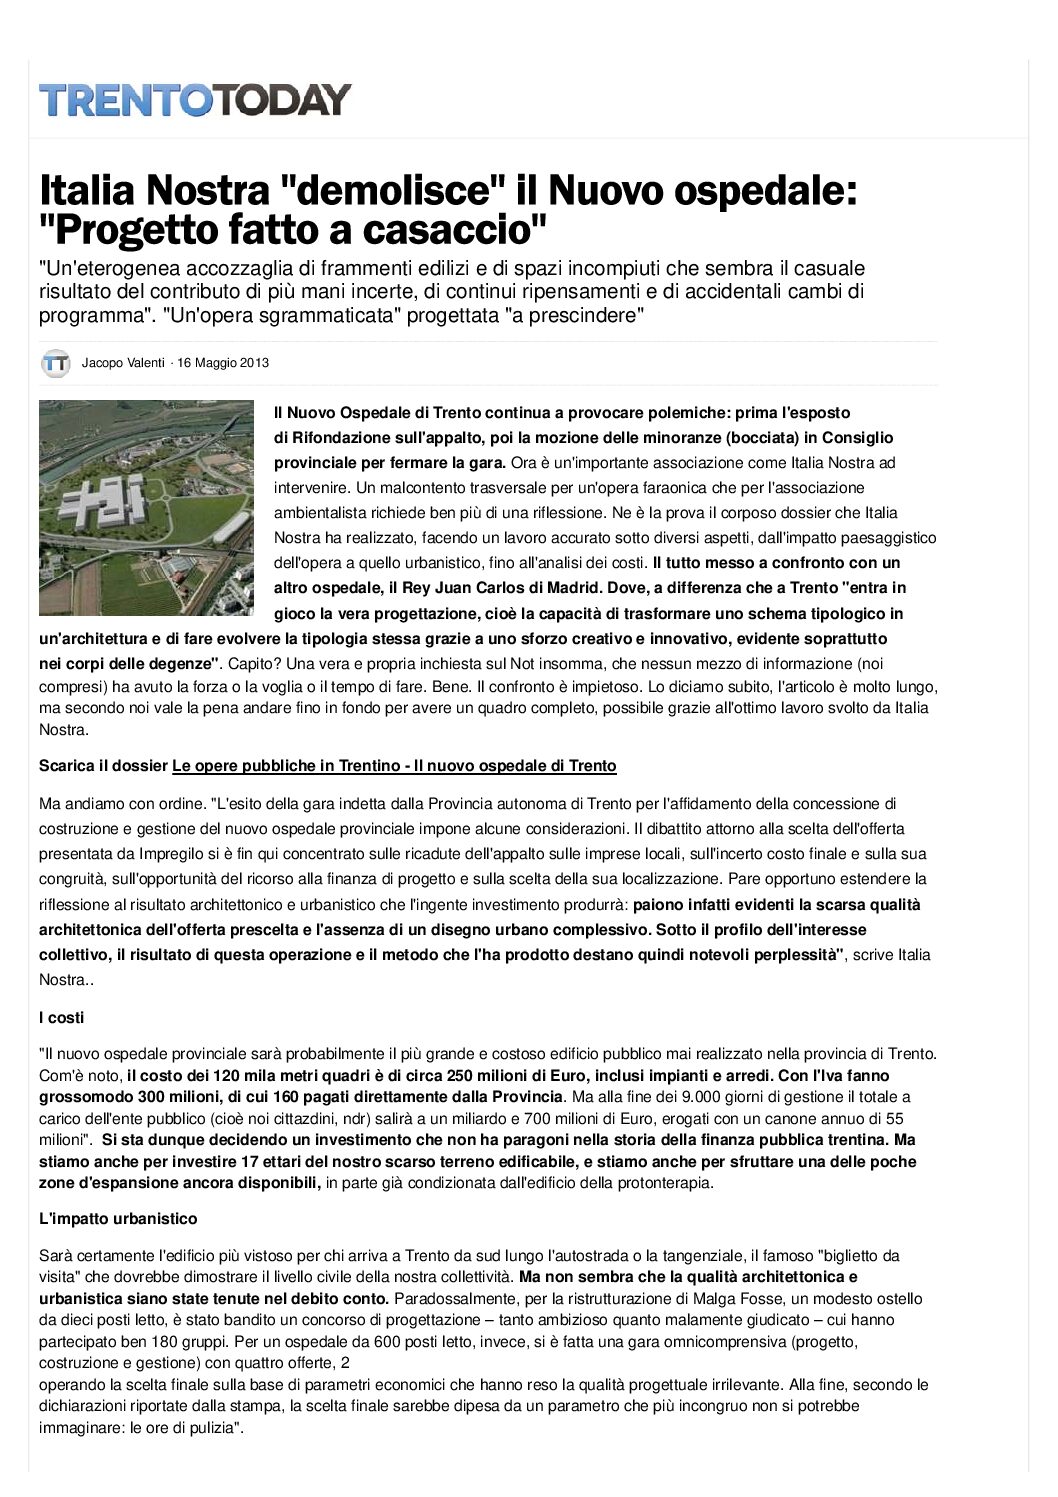 Trento: Italia Nostra “demolisce” il progetto del nuovo ospedale